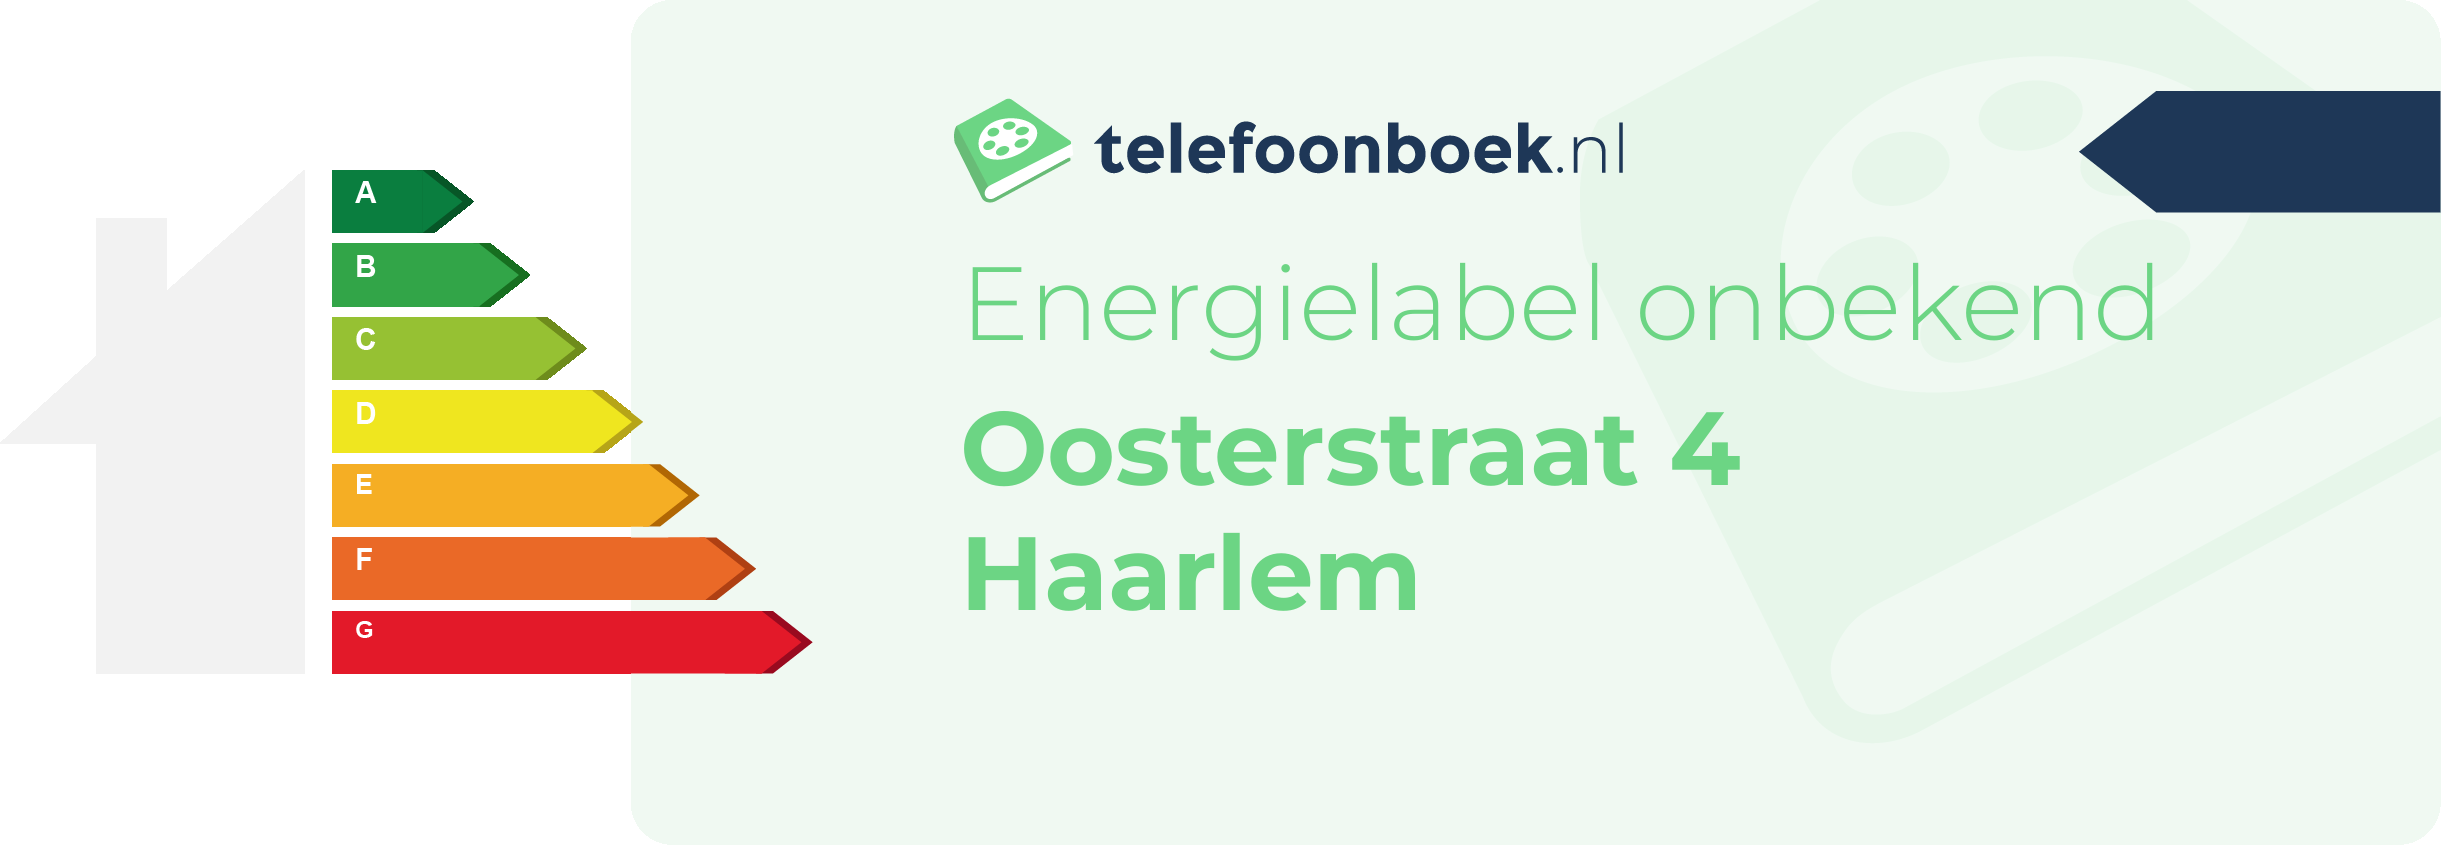 Energielabel Oosterstraat 4 Haarlem